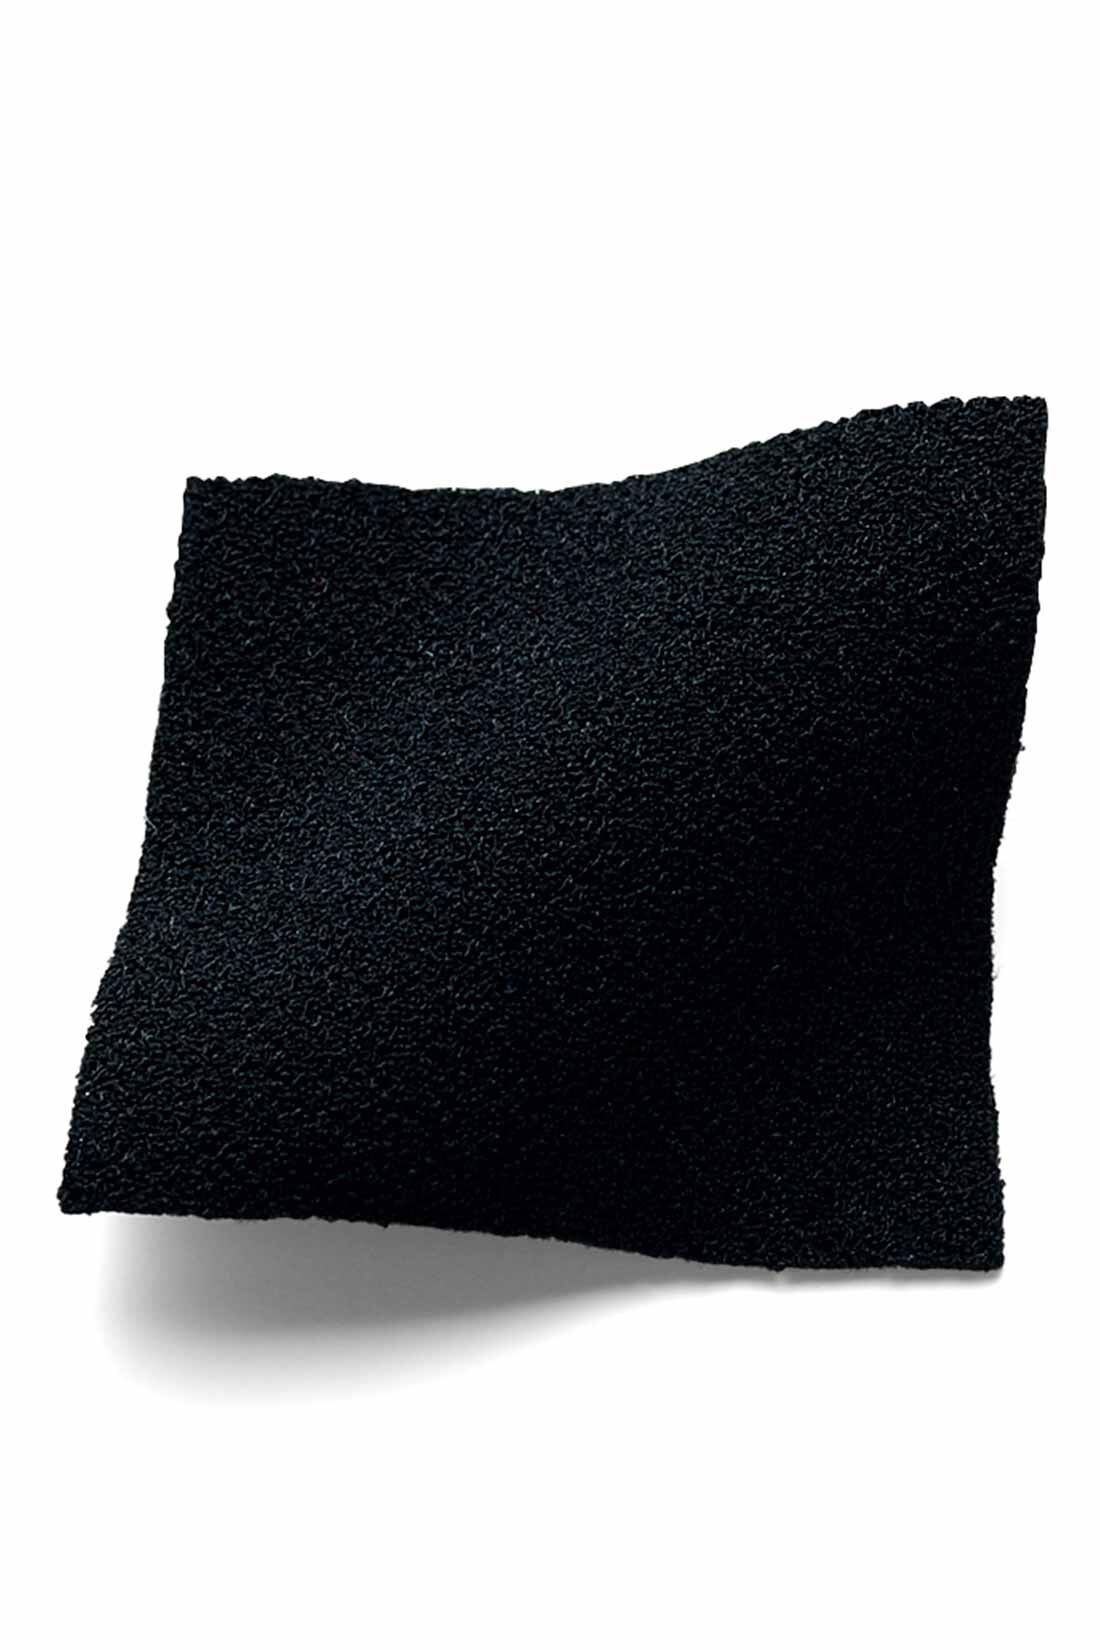 イディット|IEDIT[イディット]　イージーな着心地で上品スタイルがかなうプリーツ切り替えワンピース〈ブラック〉|布はく見えするほどよい厚みのジョーゼット素材。